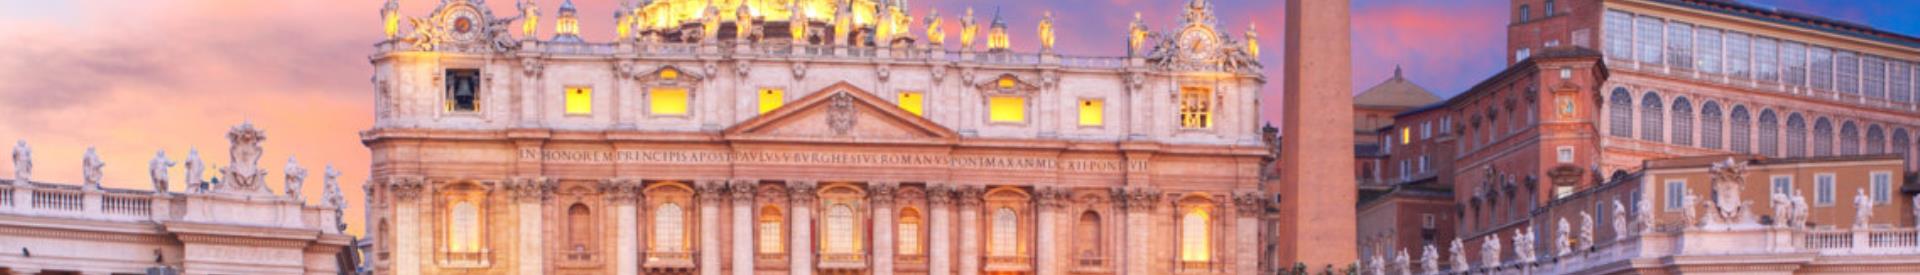 Basilica di San Pietro - Città del Vaticano - Hotel Piccadilly Roma